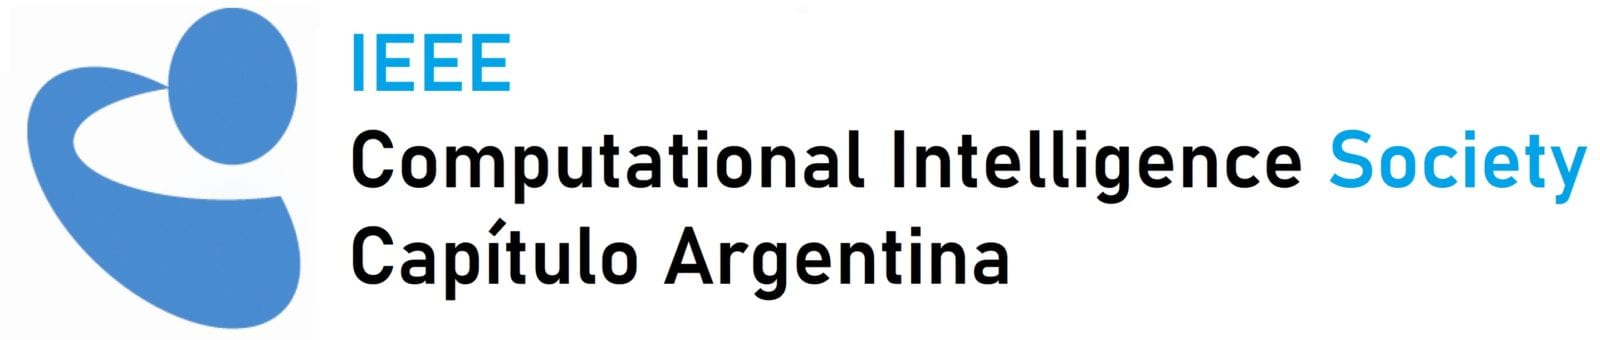 IEEE Capítulo Argentino de la CIS